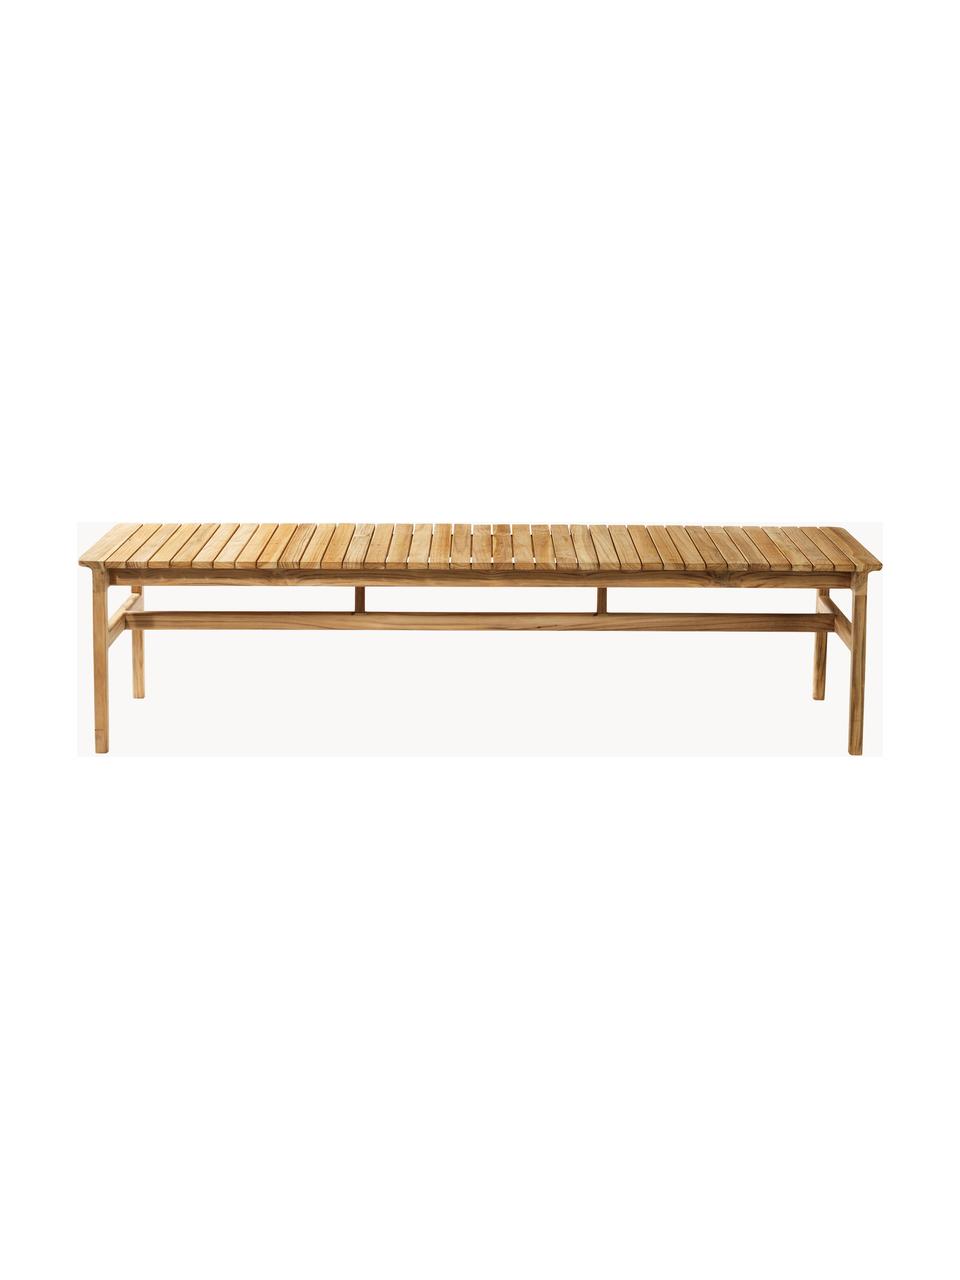 Zahradní lavice z teakového dřeva Sammen, Teakové dřevo

Tento produkt je vyroben z udržitelných zdrojů dřeva s certifikací FSC®., Teakové dřevo, Š 186 cm, H 50 cm